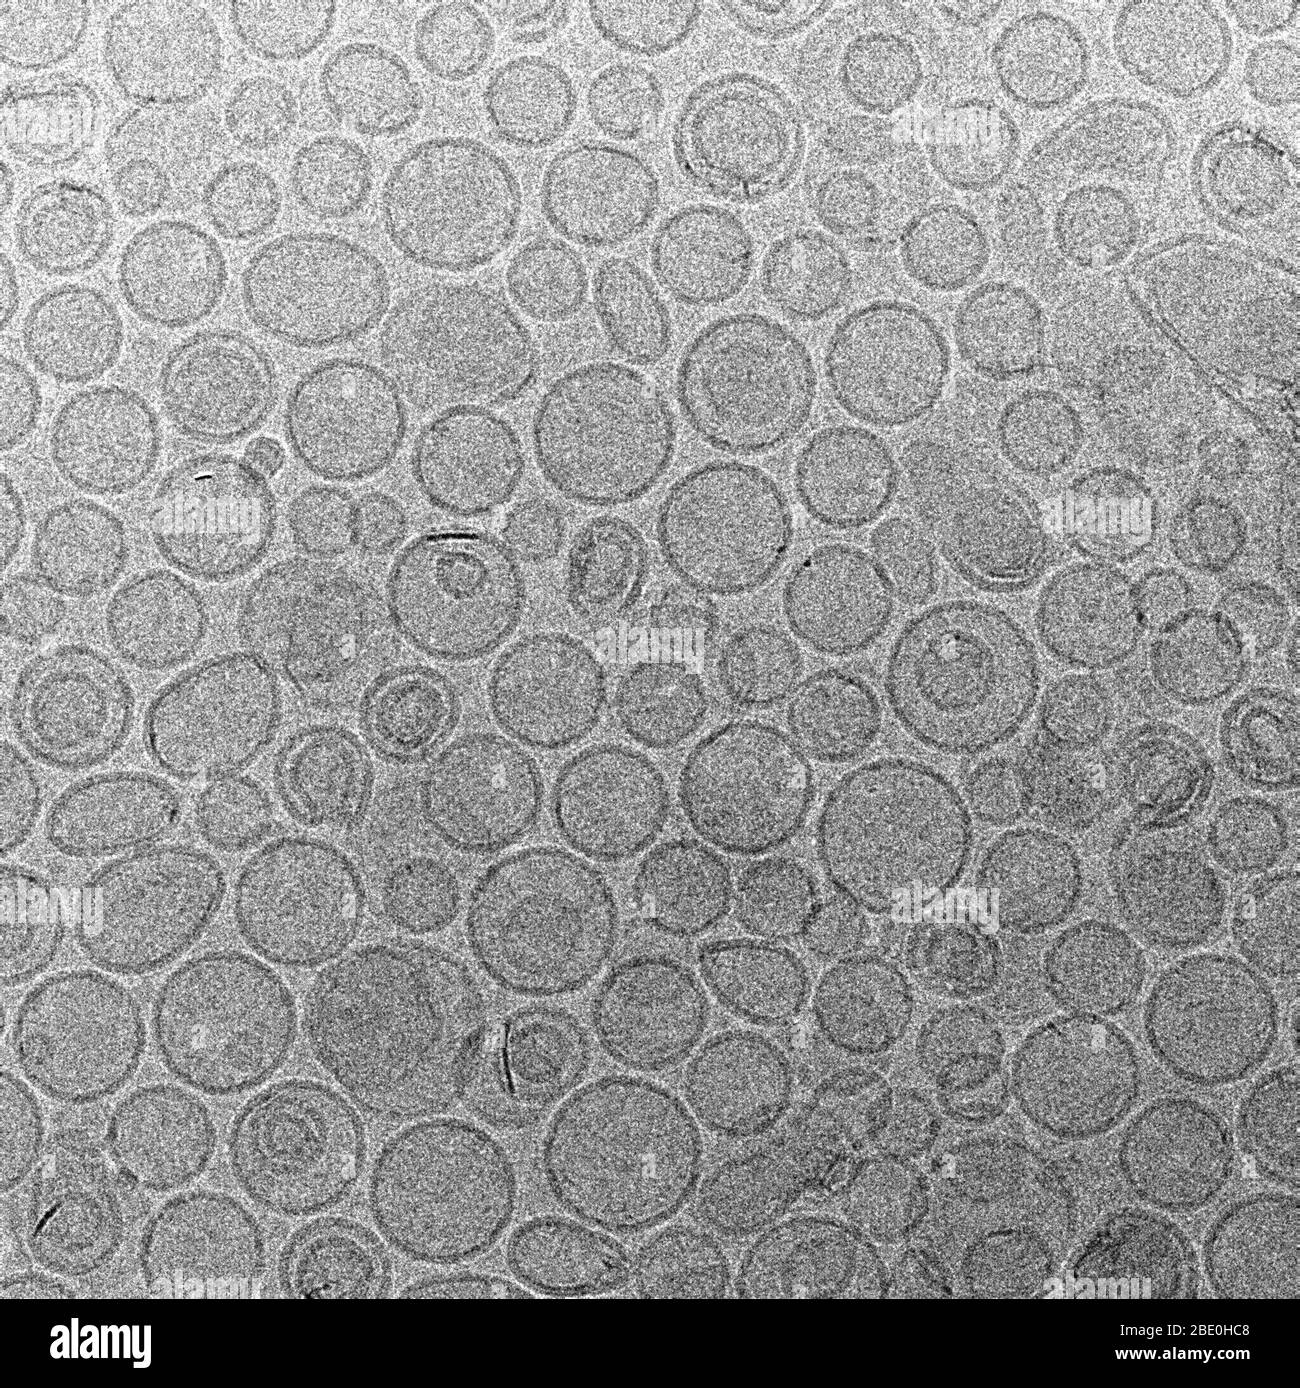 Image cryo-EM des liposomes, vésicules préparées artificiellement composées d'une bicouche lipidique. Ils peuvent être utilisés comme véhicules pour l'administration de nutriments ou de produits pharmaceutiques. Agrandissement inconnu. Banque D'Images